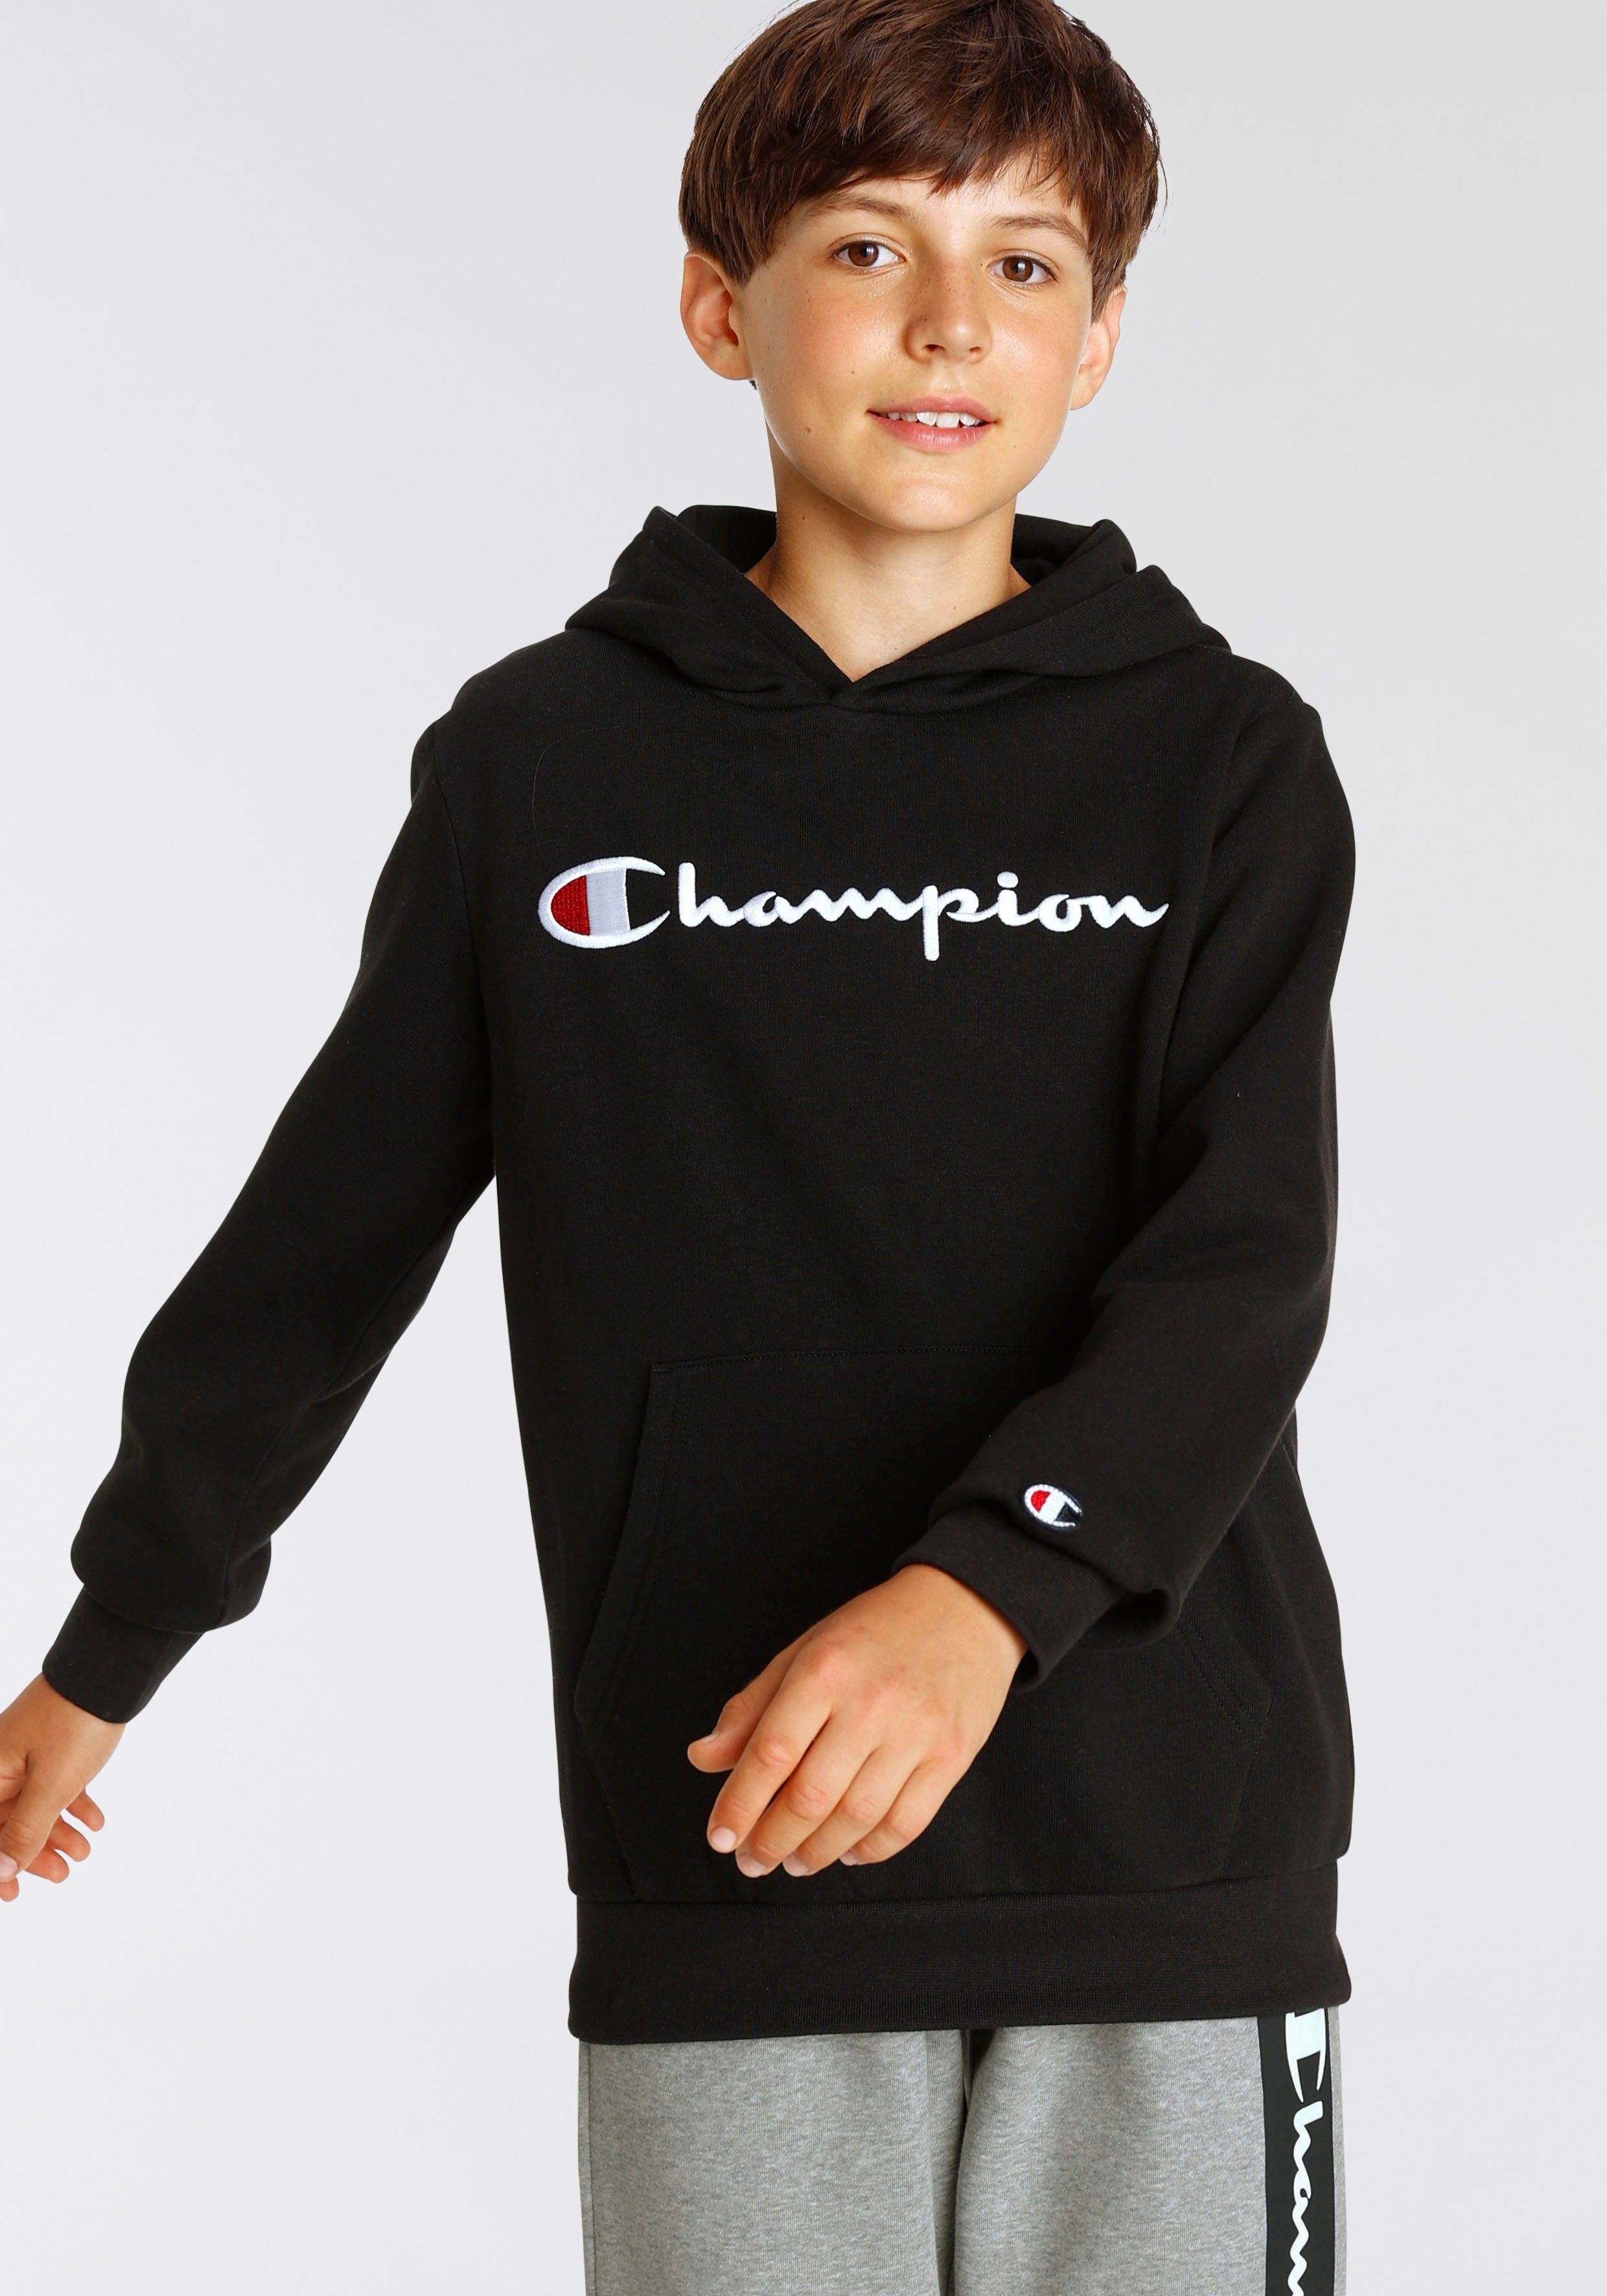 Sweatshirt für Logo - Kinder Classic Hooded Champion Sweatshirt schwarz large